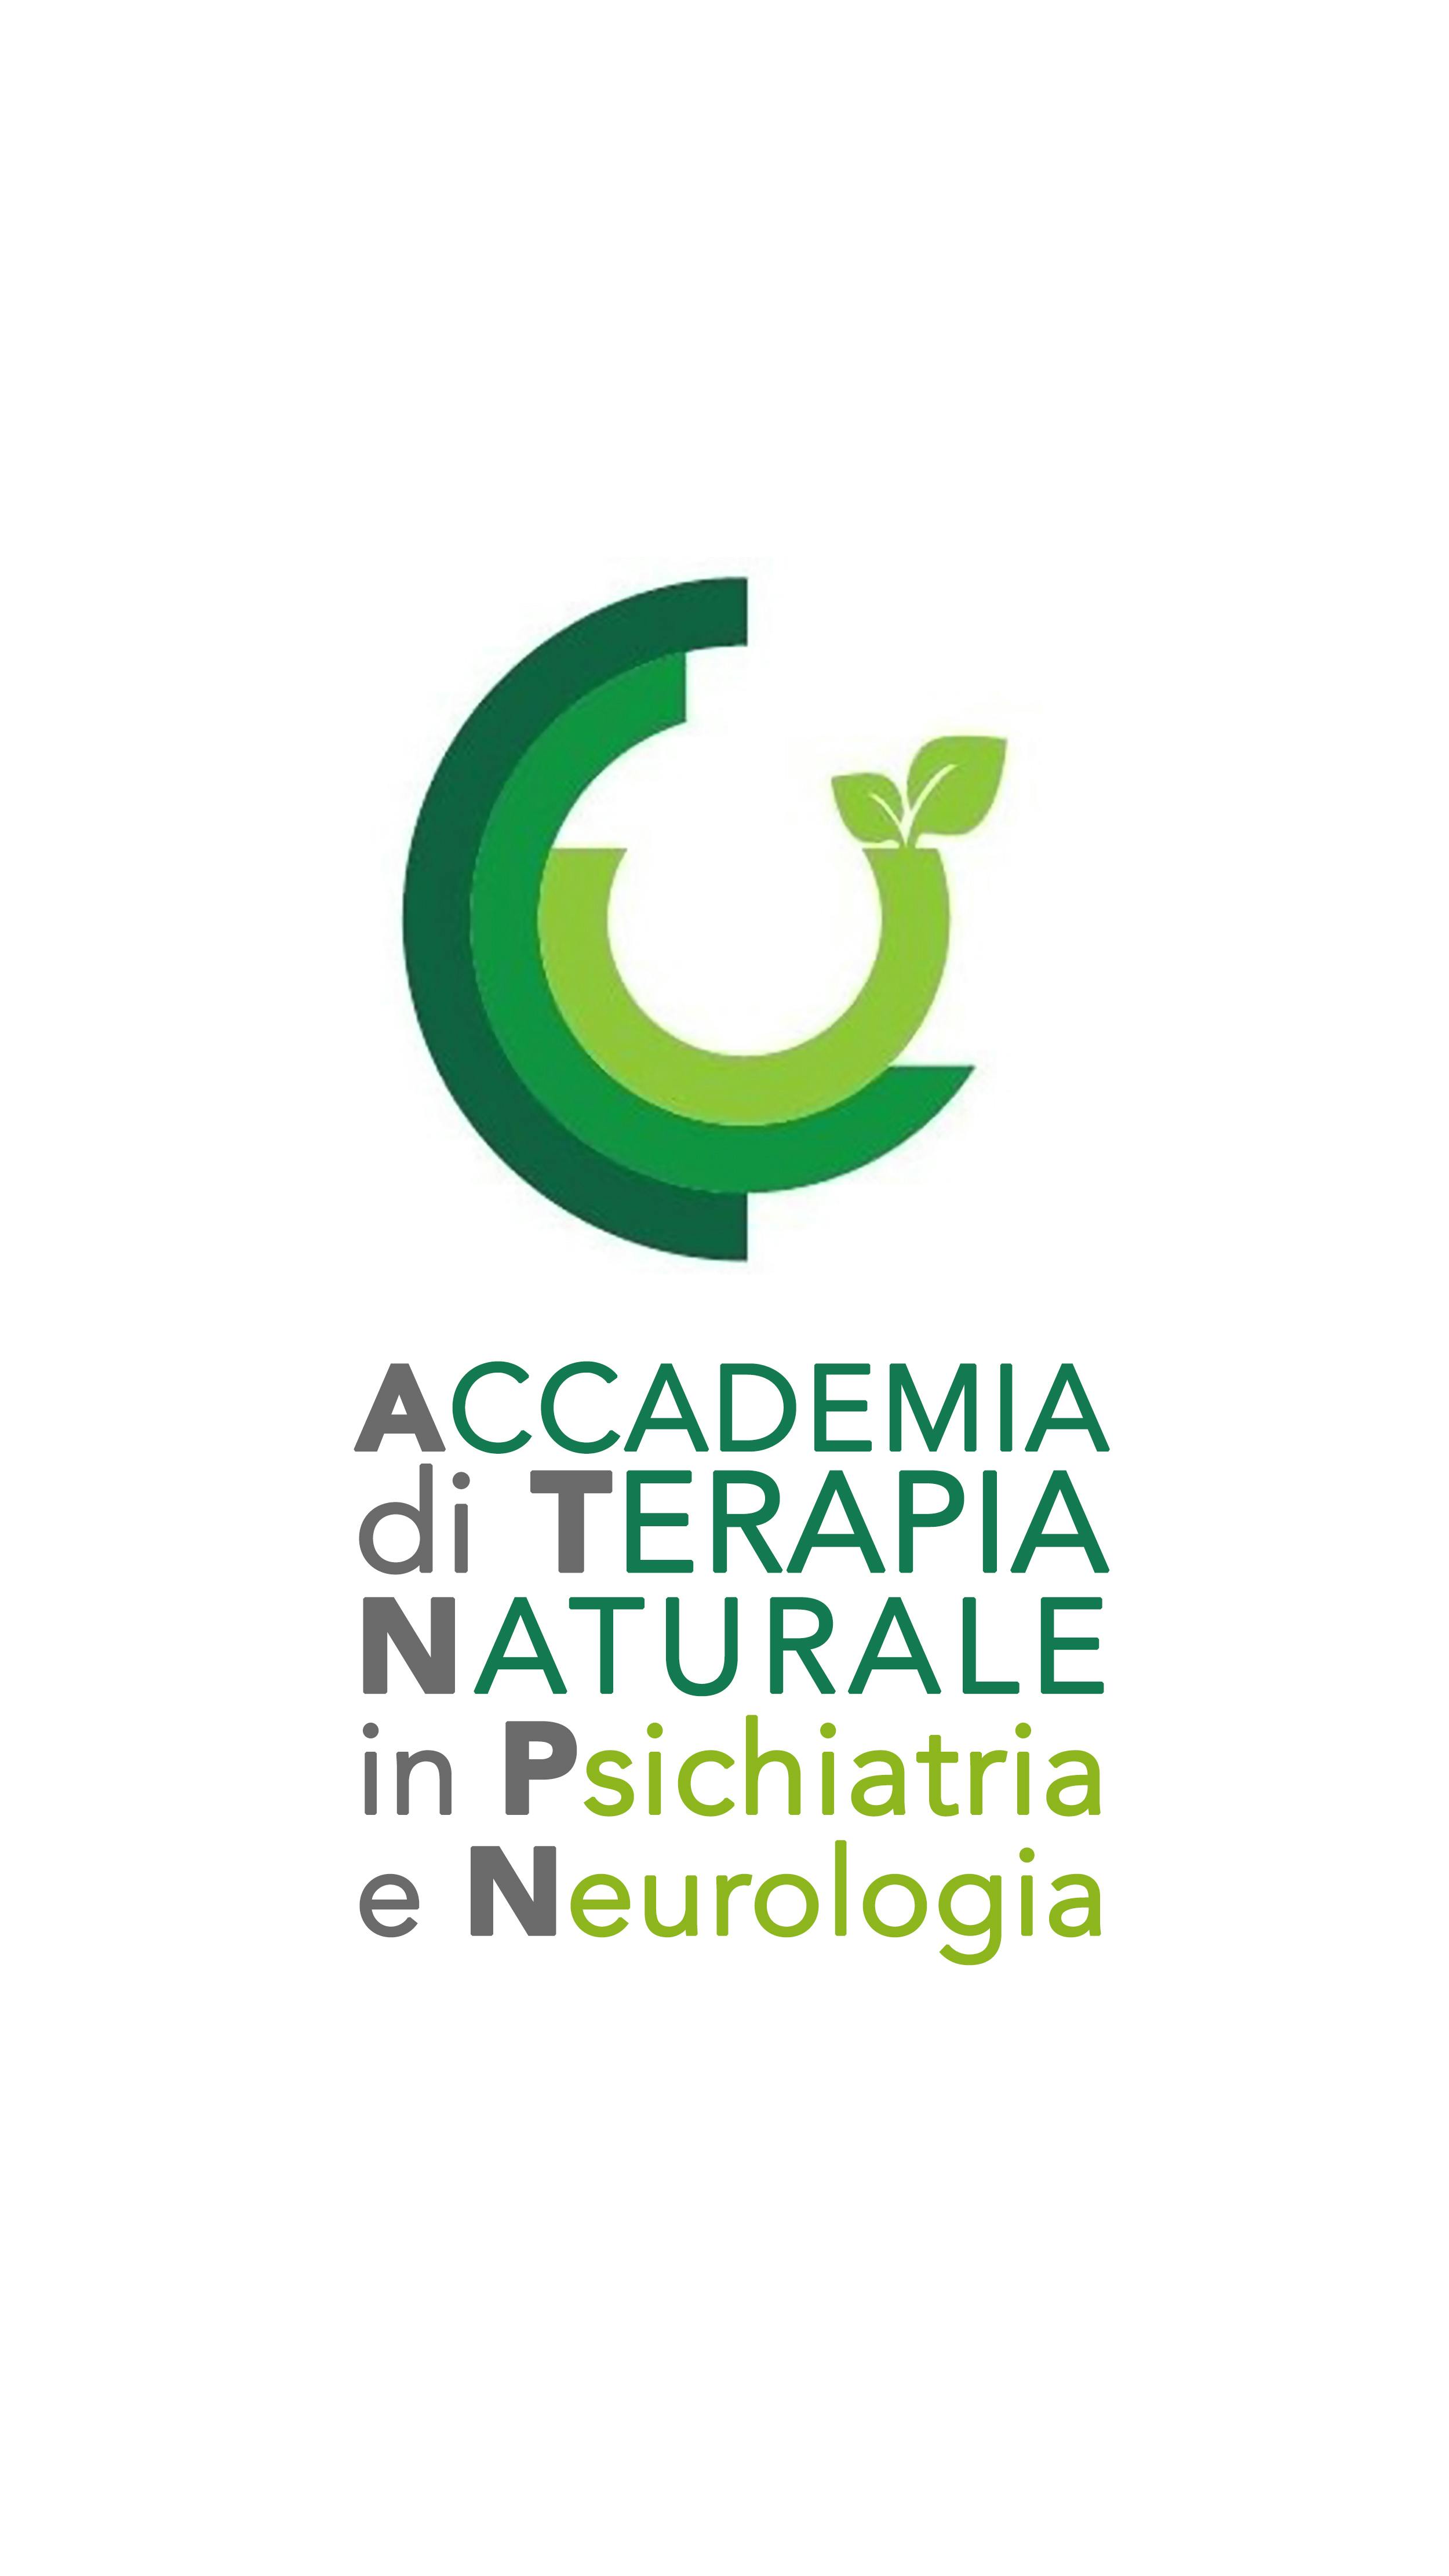 Logo dell'Accademia di Terapia Naturale in Psichiatria e Neurologia: tre semicerchi di tonalità differenti di verde da cui nascono due foglie verdi.